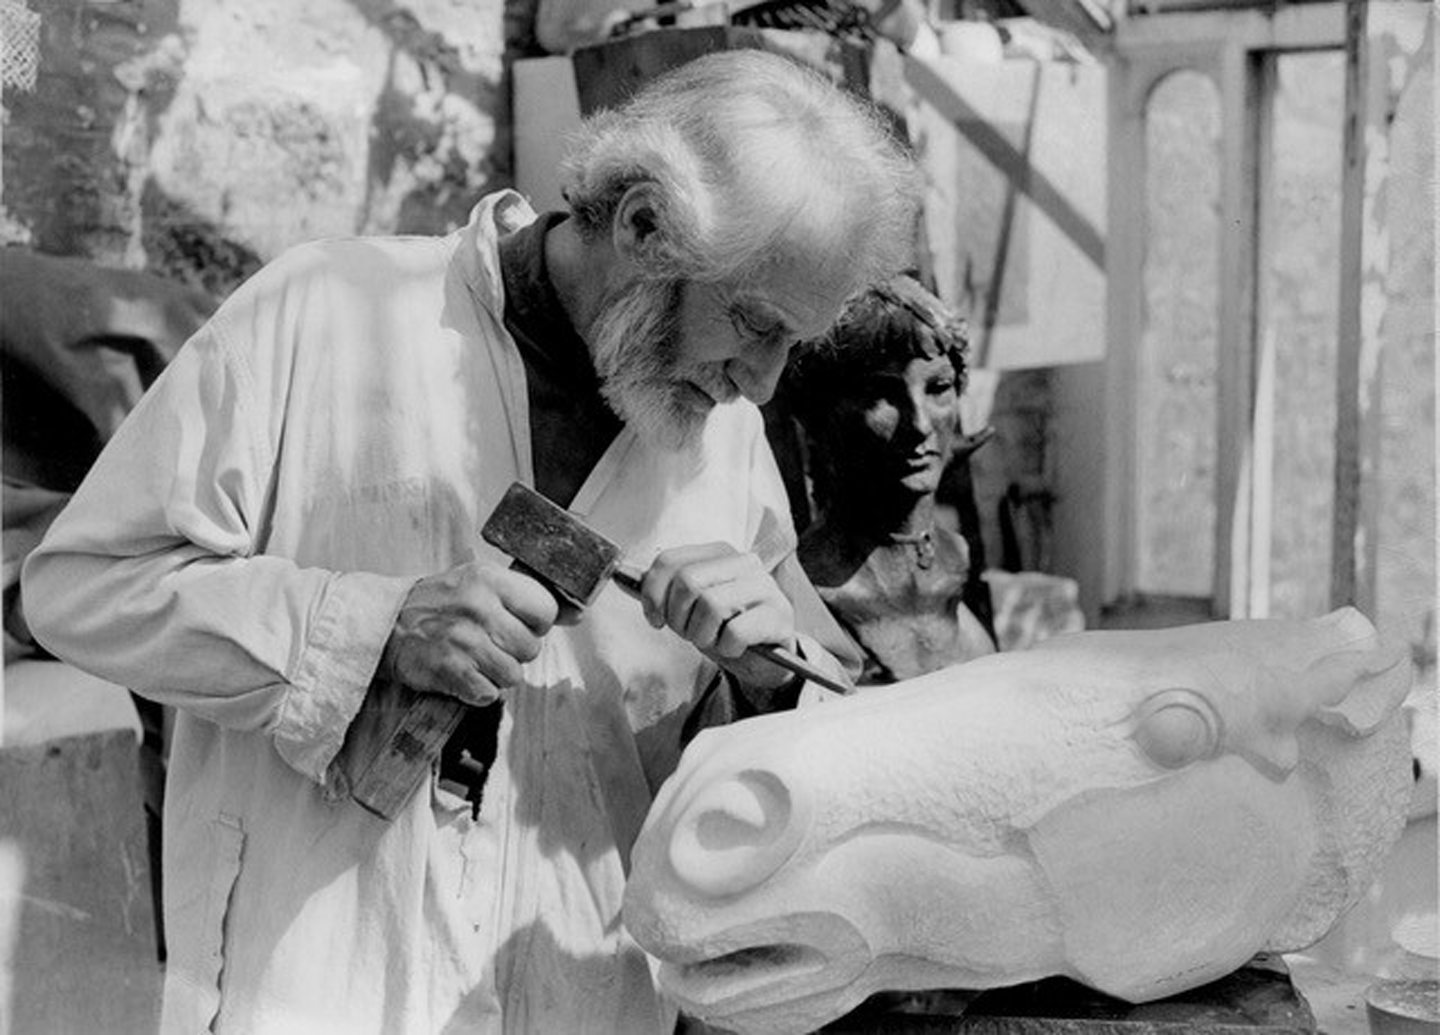 Peter Regent working on one of his sculptures.